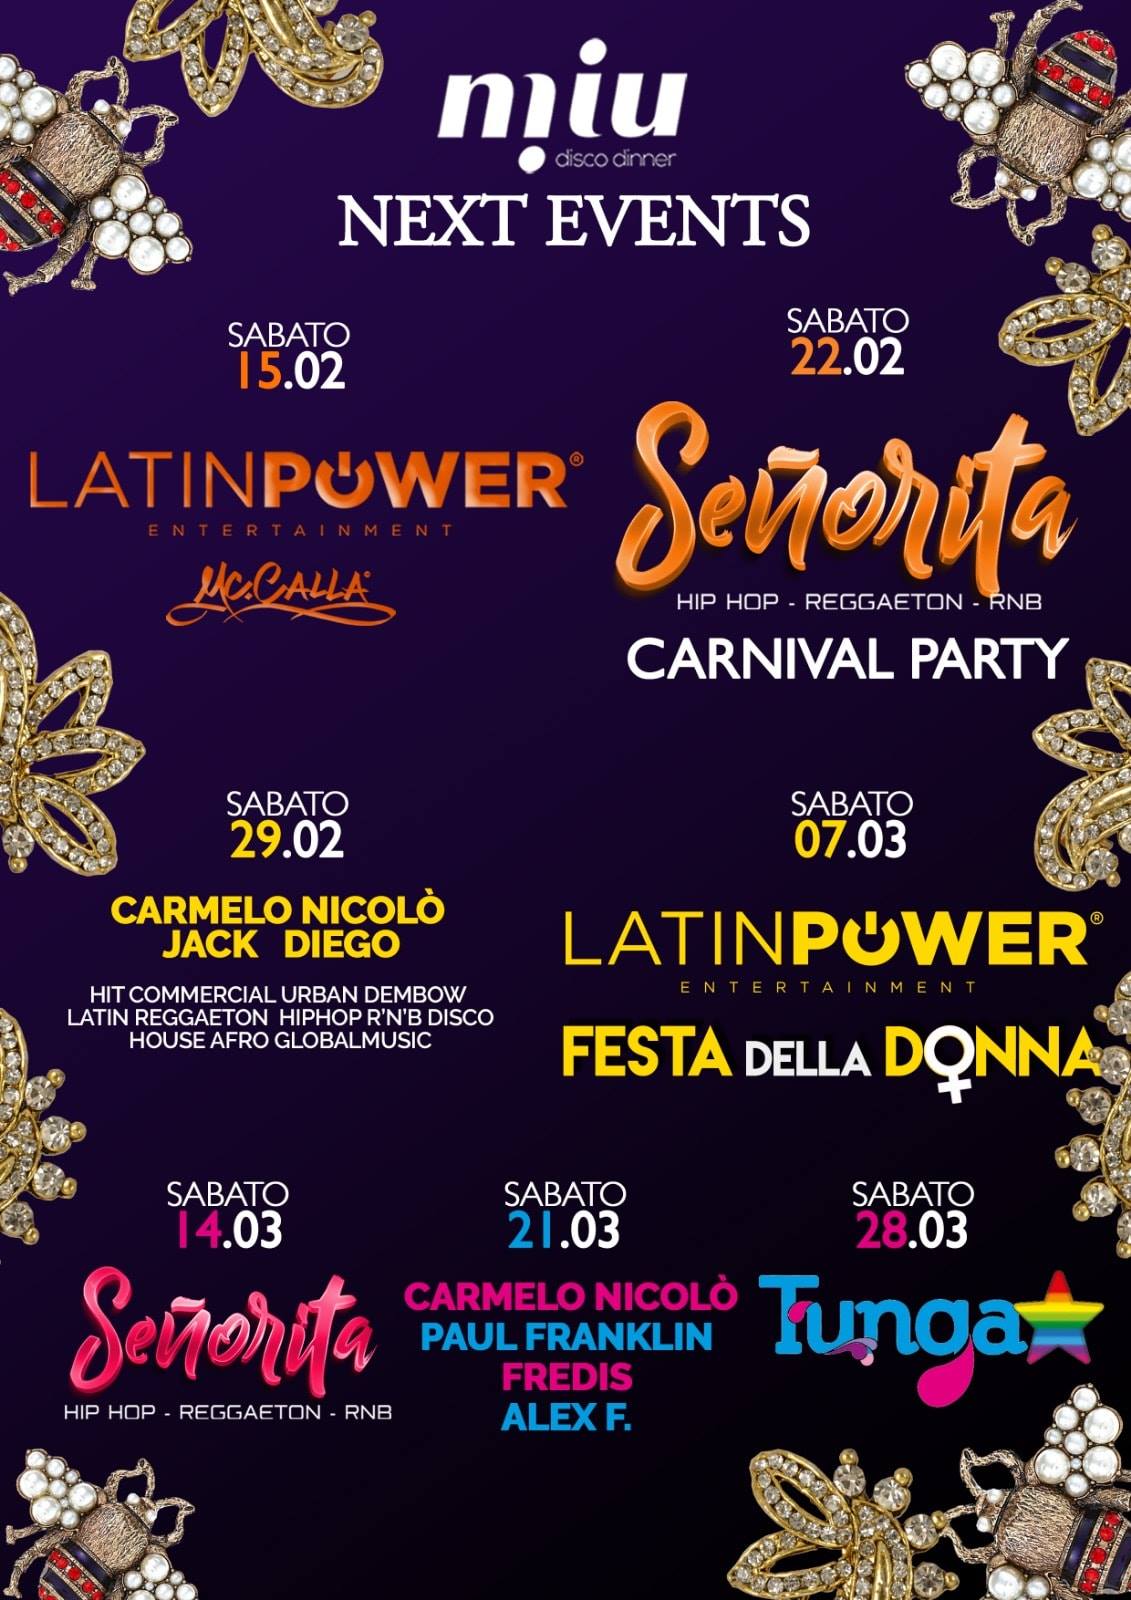 Latin Power Festa della Donna Miu Disco Dinner Marotta